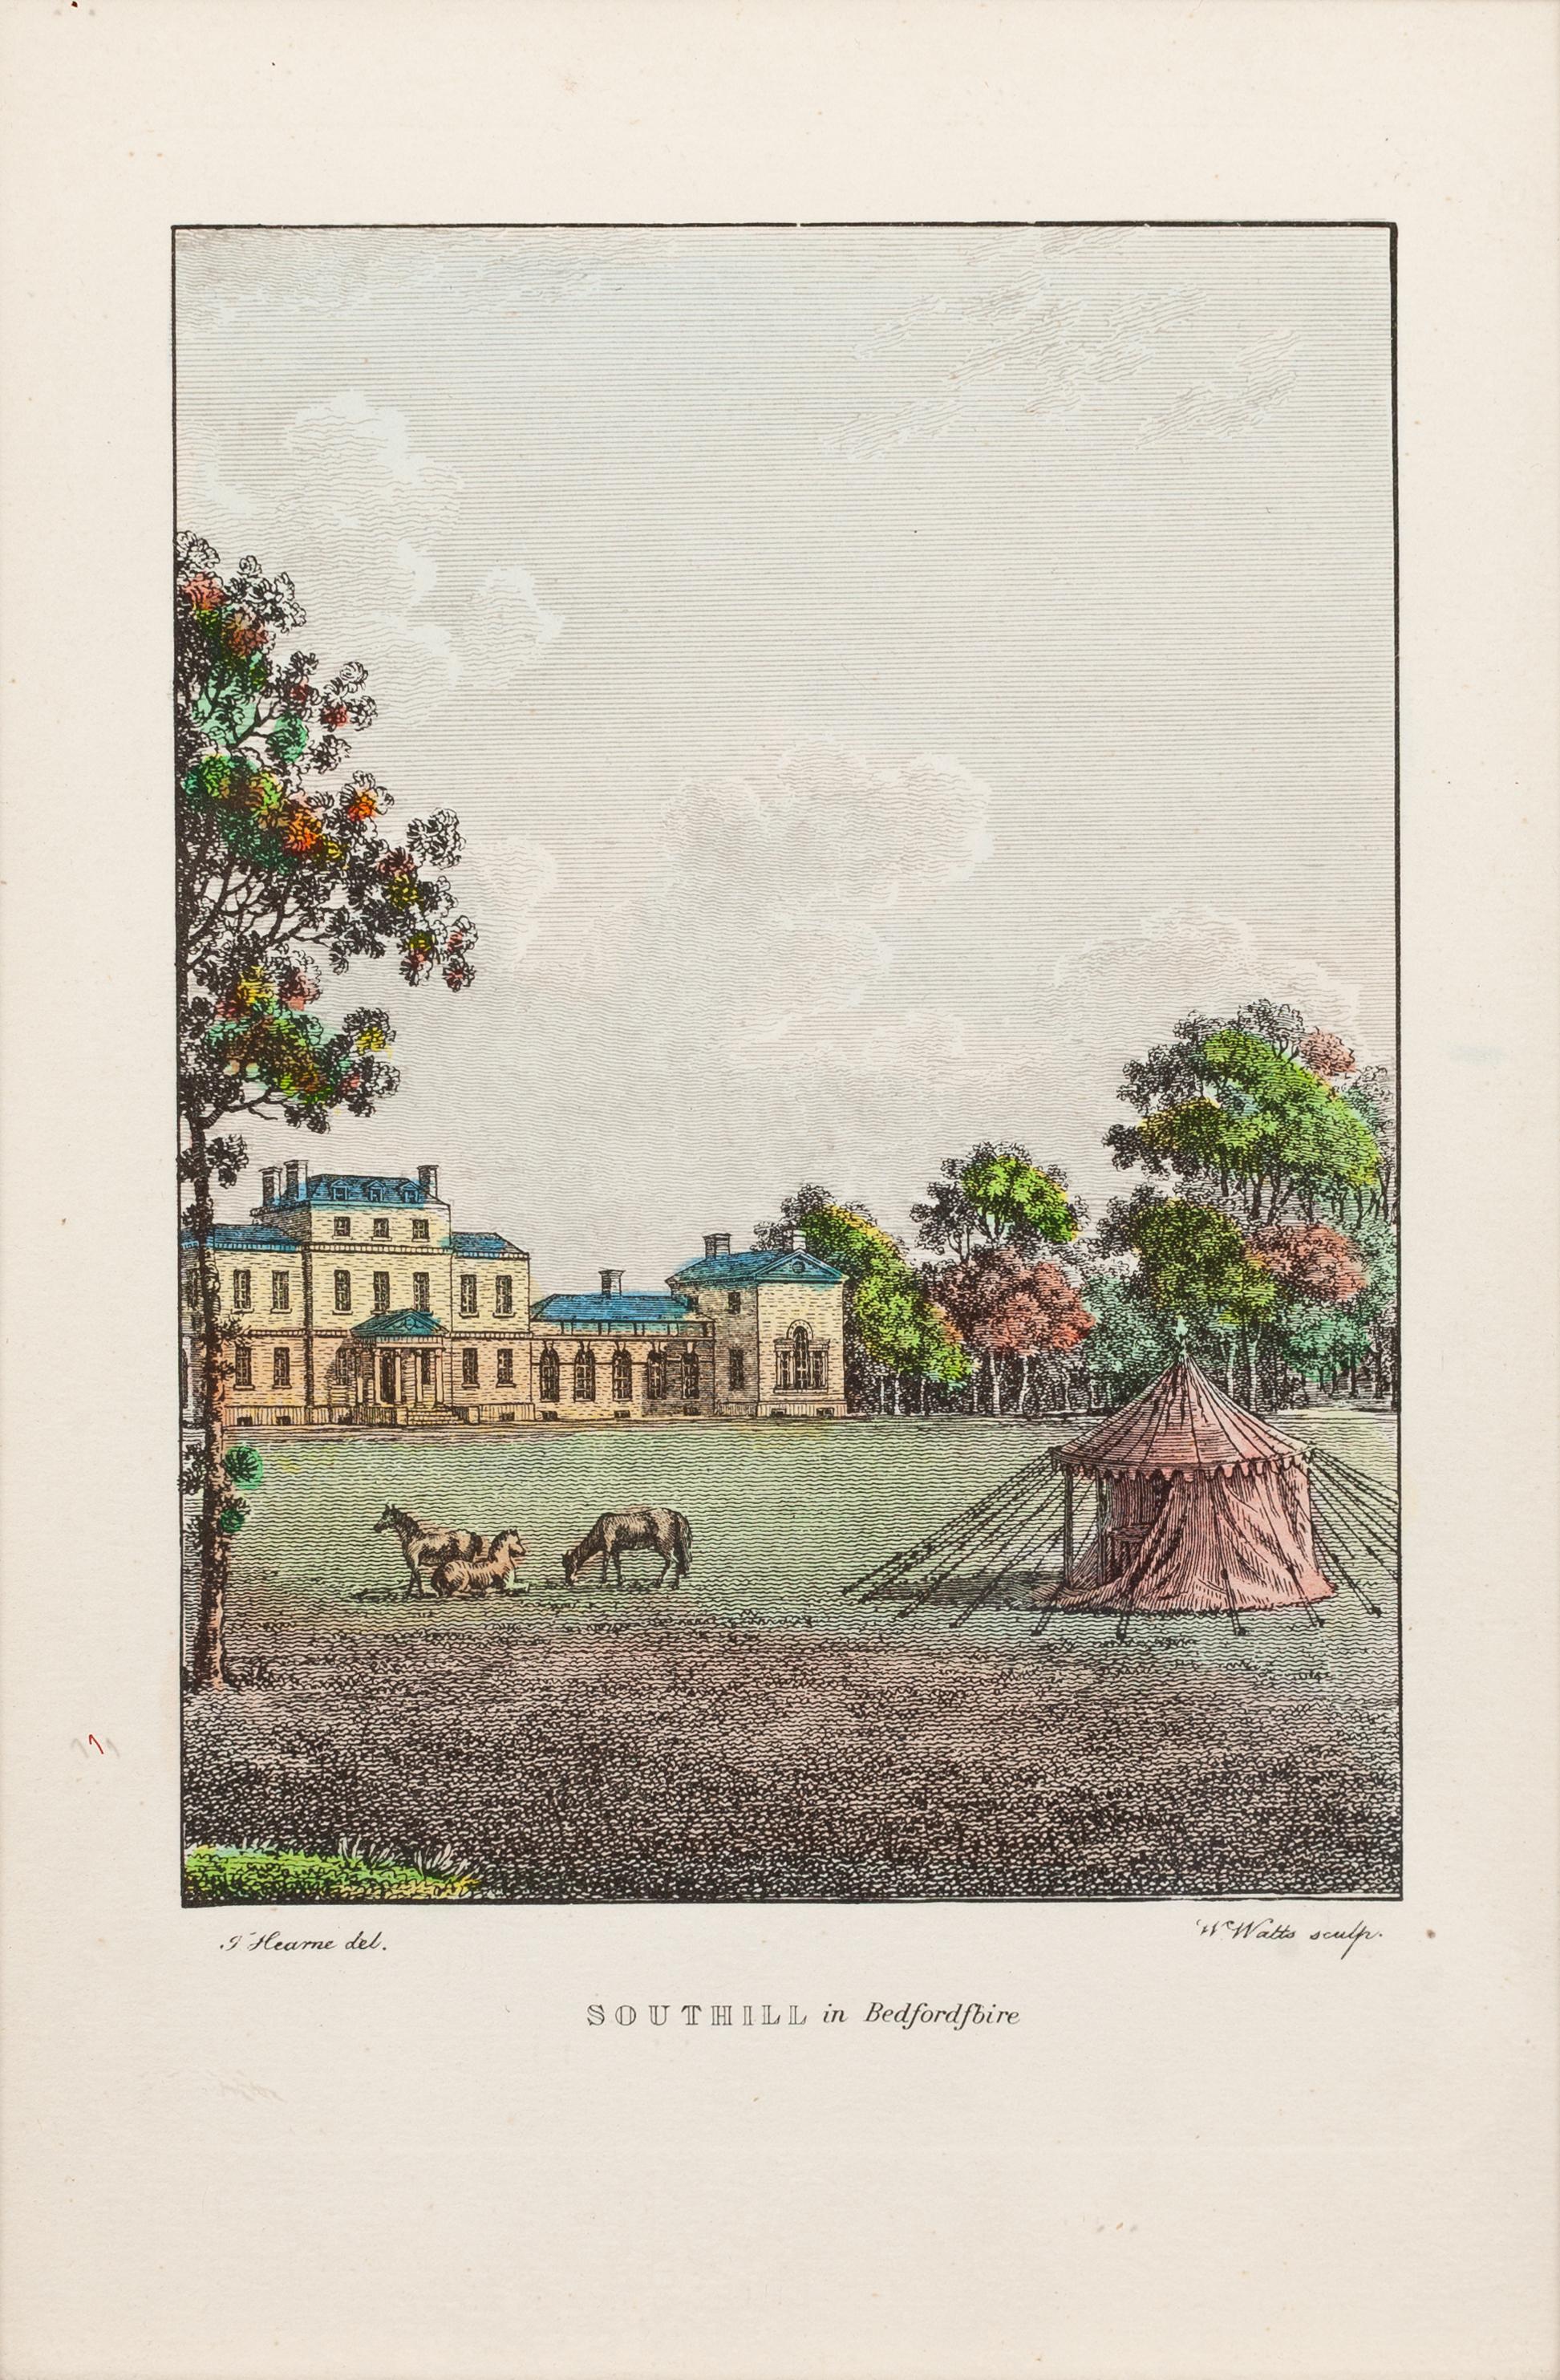 T. Hearne Landscape Print – Southill in Bedfordfloire (Englische Schlösser und Landschaften) 